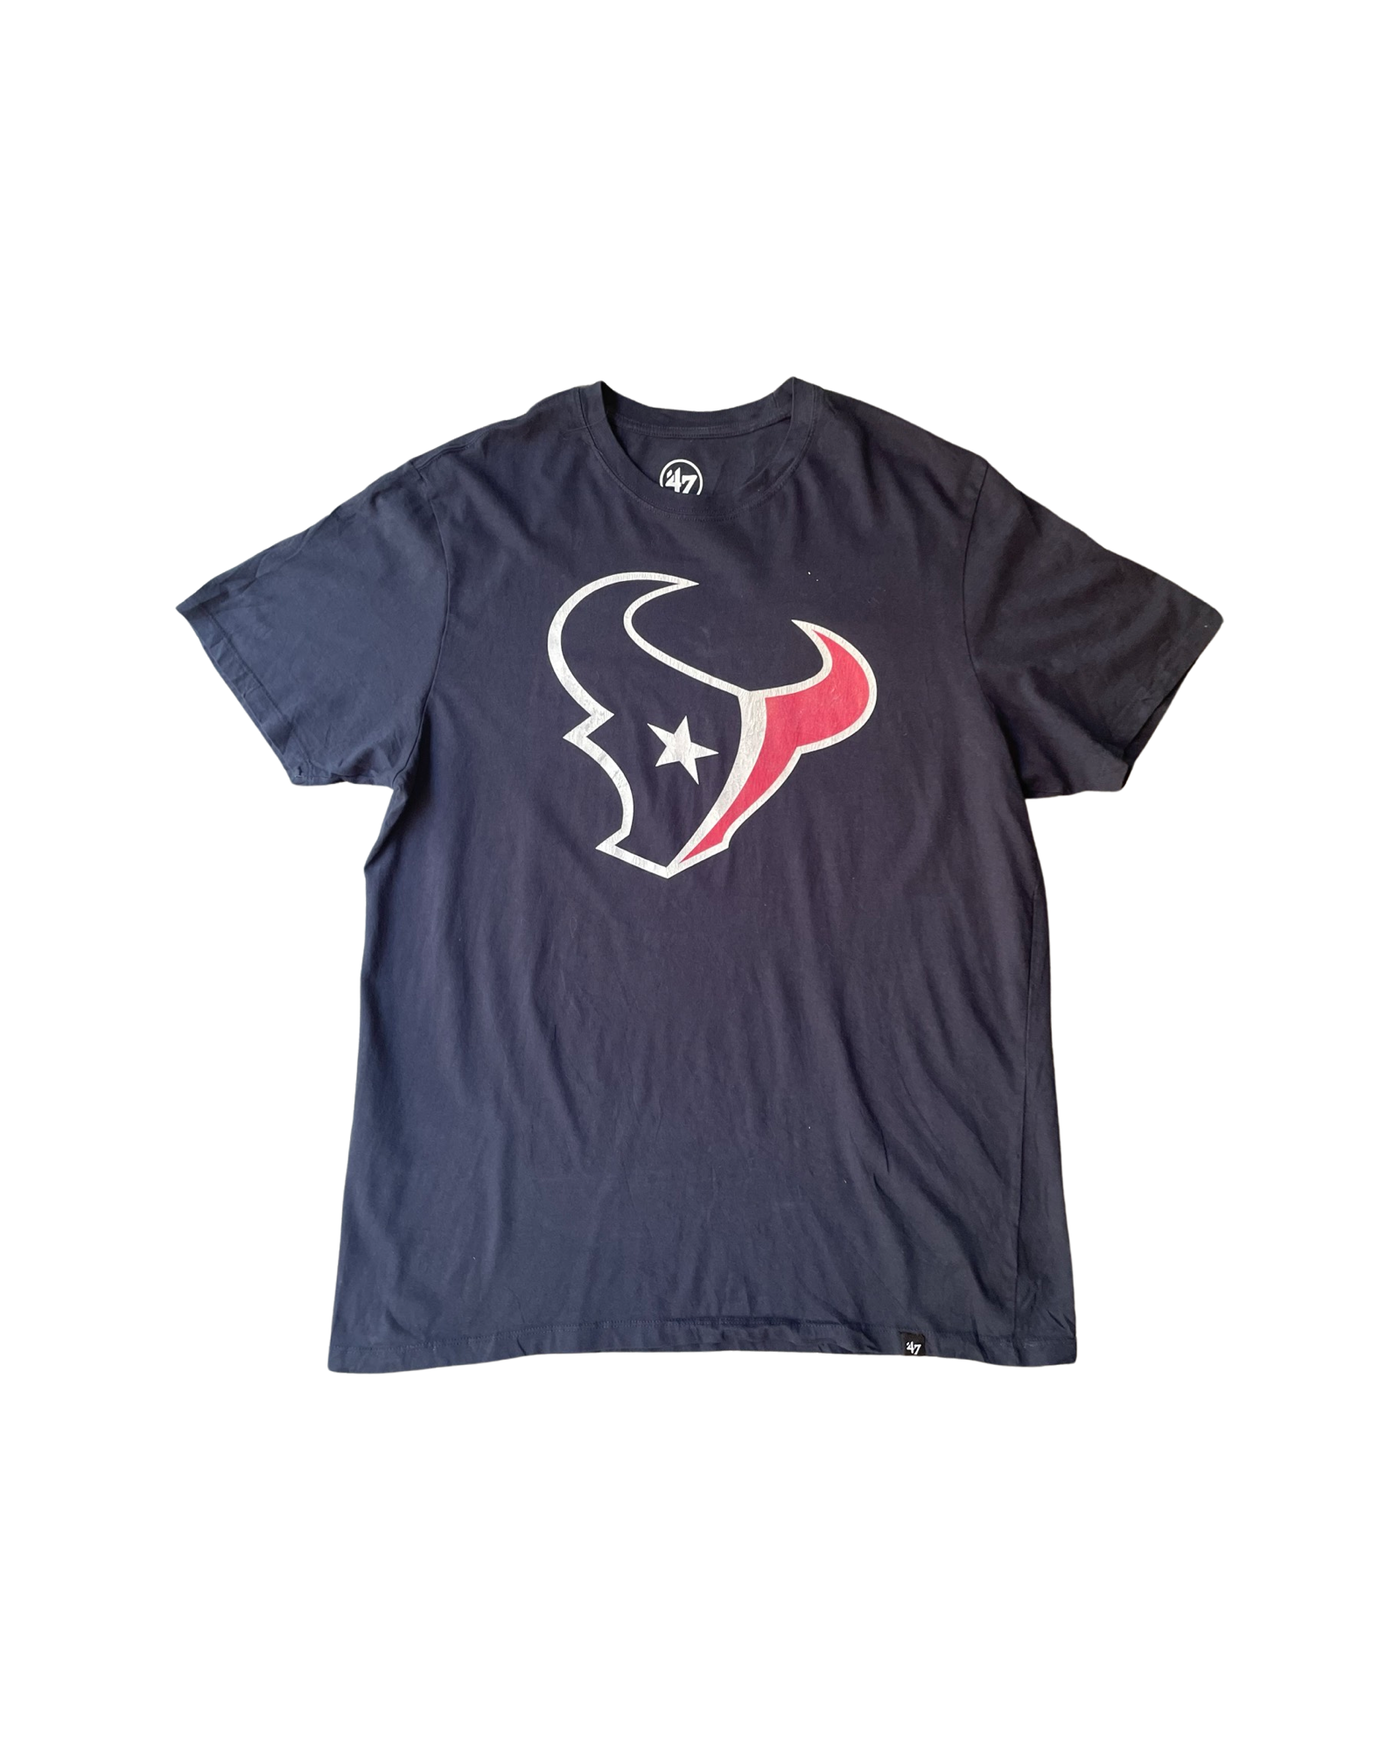 Vintage NFL Texans T-Shirt